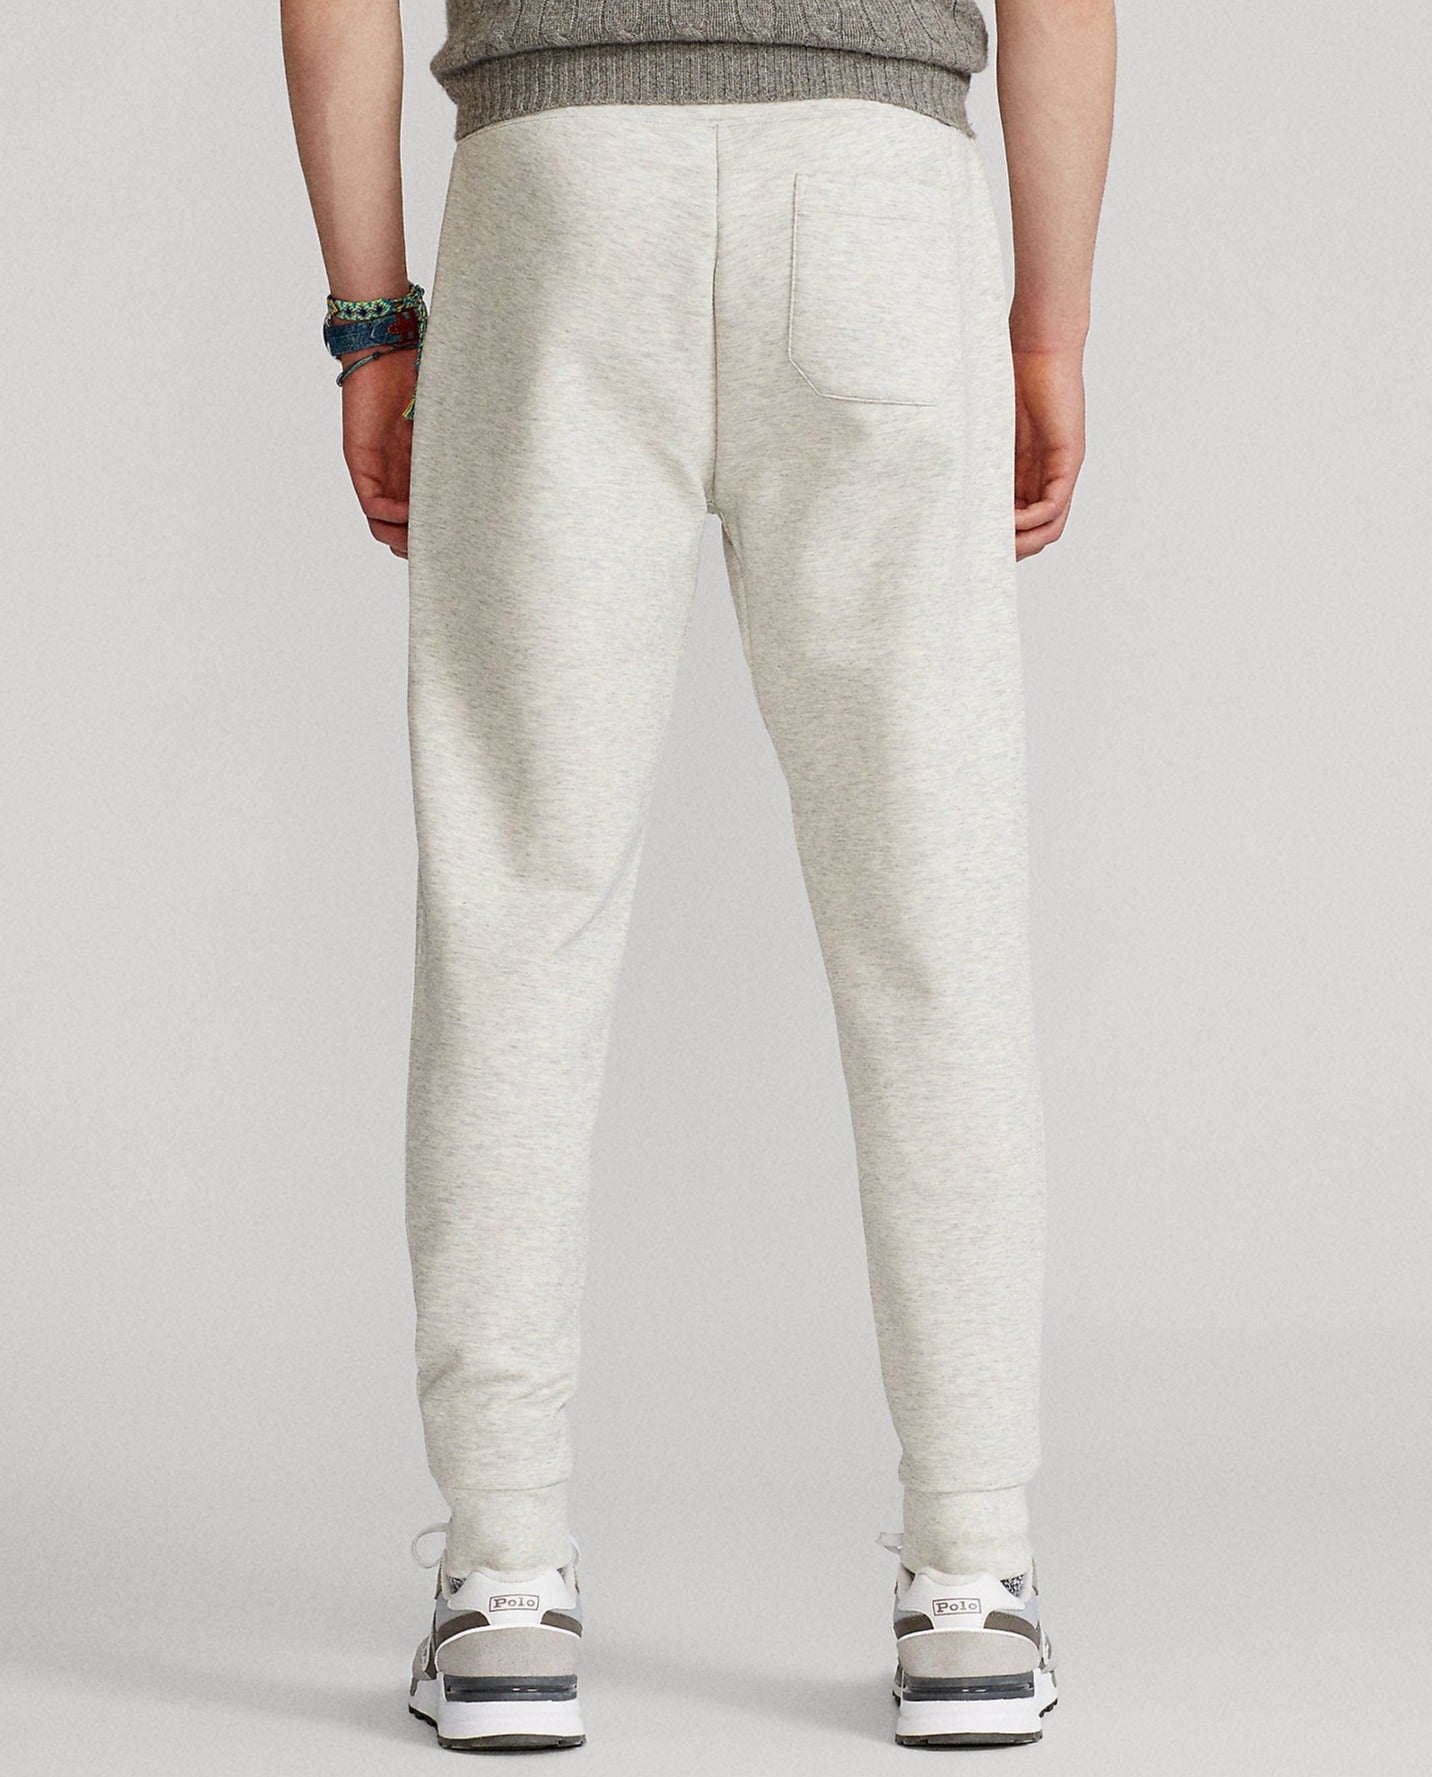 Pantalon de jogging pour homme Ralph Lauren gris clair chiné | Georgespaul